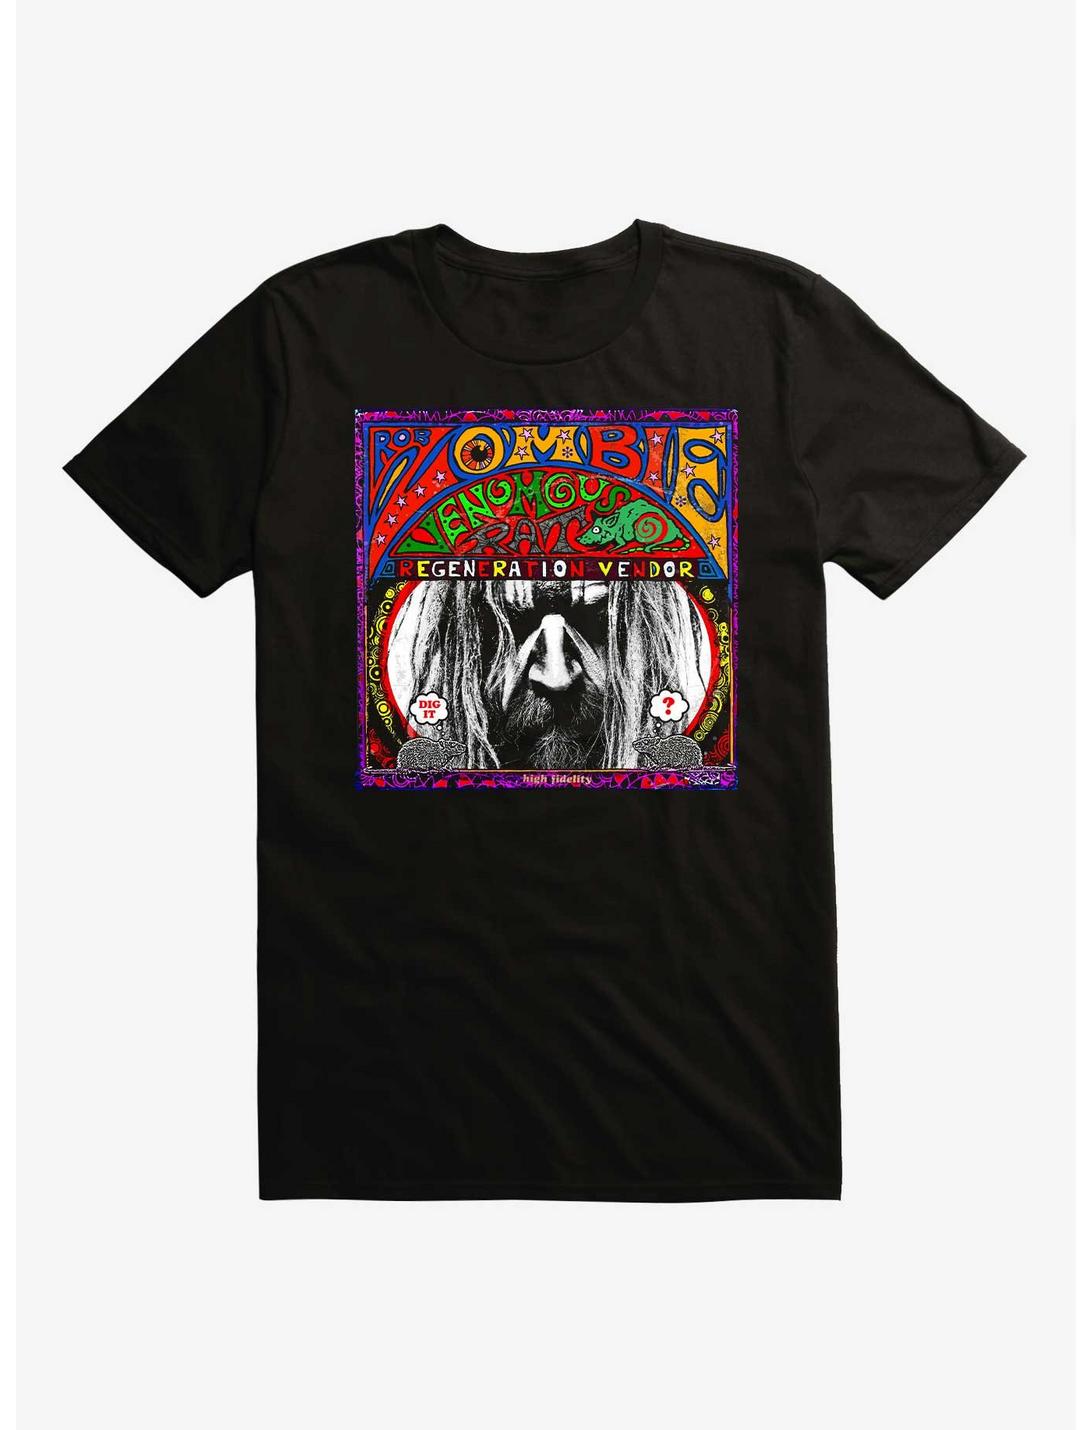 Rob Zombei Venomous Rat Regeneration Vendor T-Shirt, BLACK, hi-res